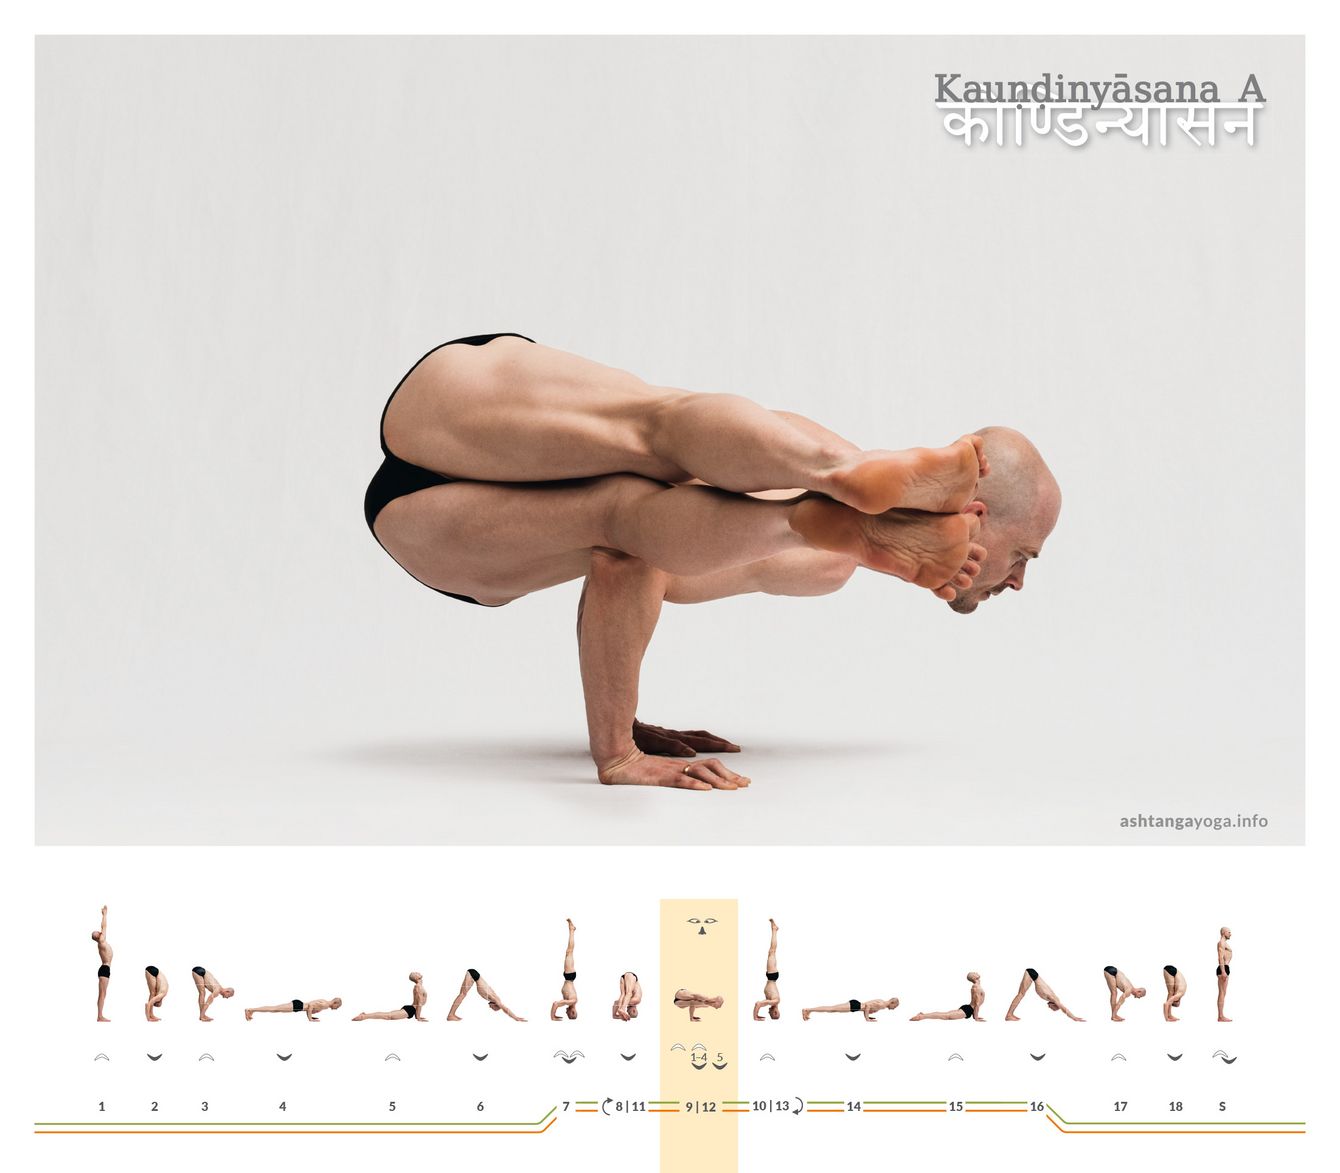 Kaundinyasana, oder dem Kaundinya gewidmete Position, ist in Variante A, eine auf den Armen balancierte Haltung. Beide Beine weisen gemeinsam zu einer Seite.